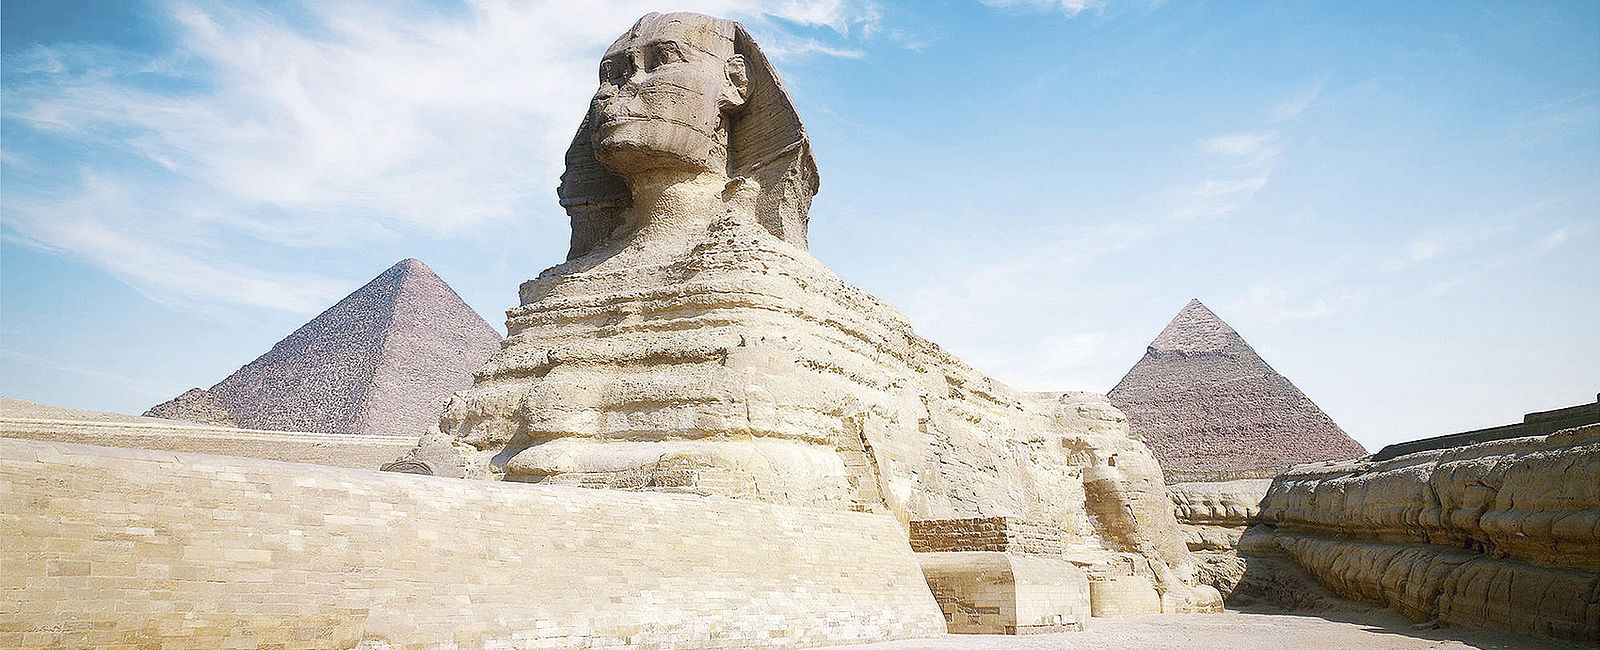 ÄGYPTEN GENUSS TRIFFT GESCHICHTE
 Sonne, Meer und Kultur 